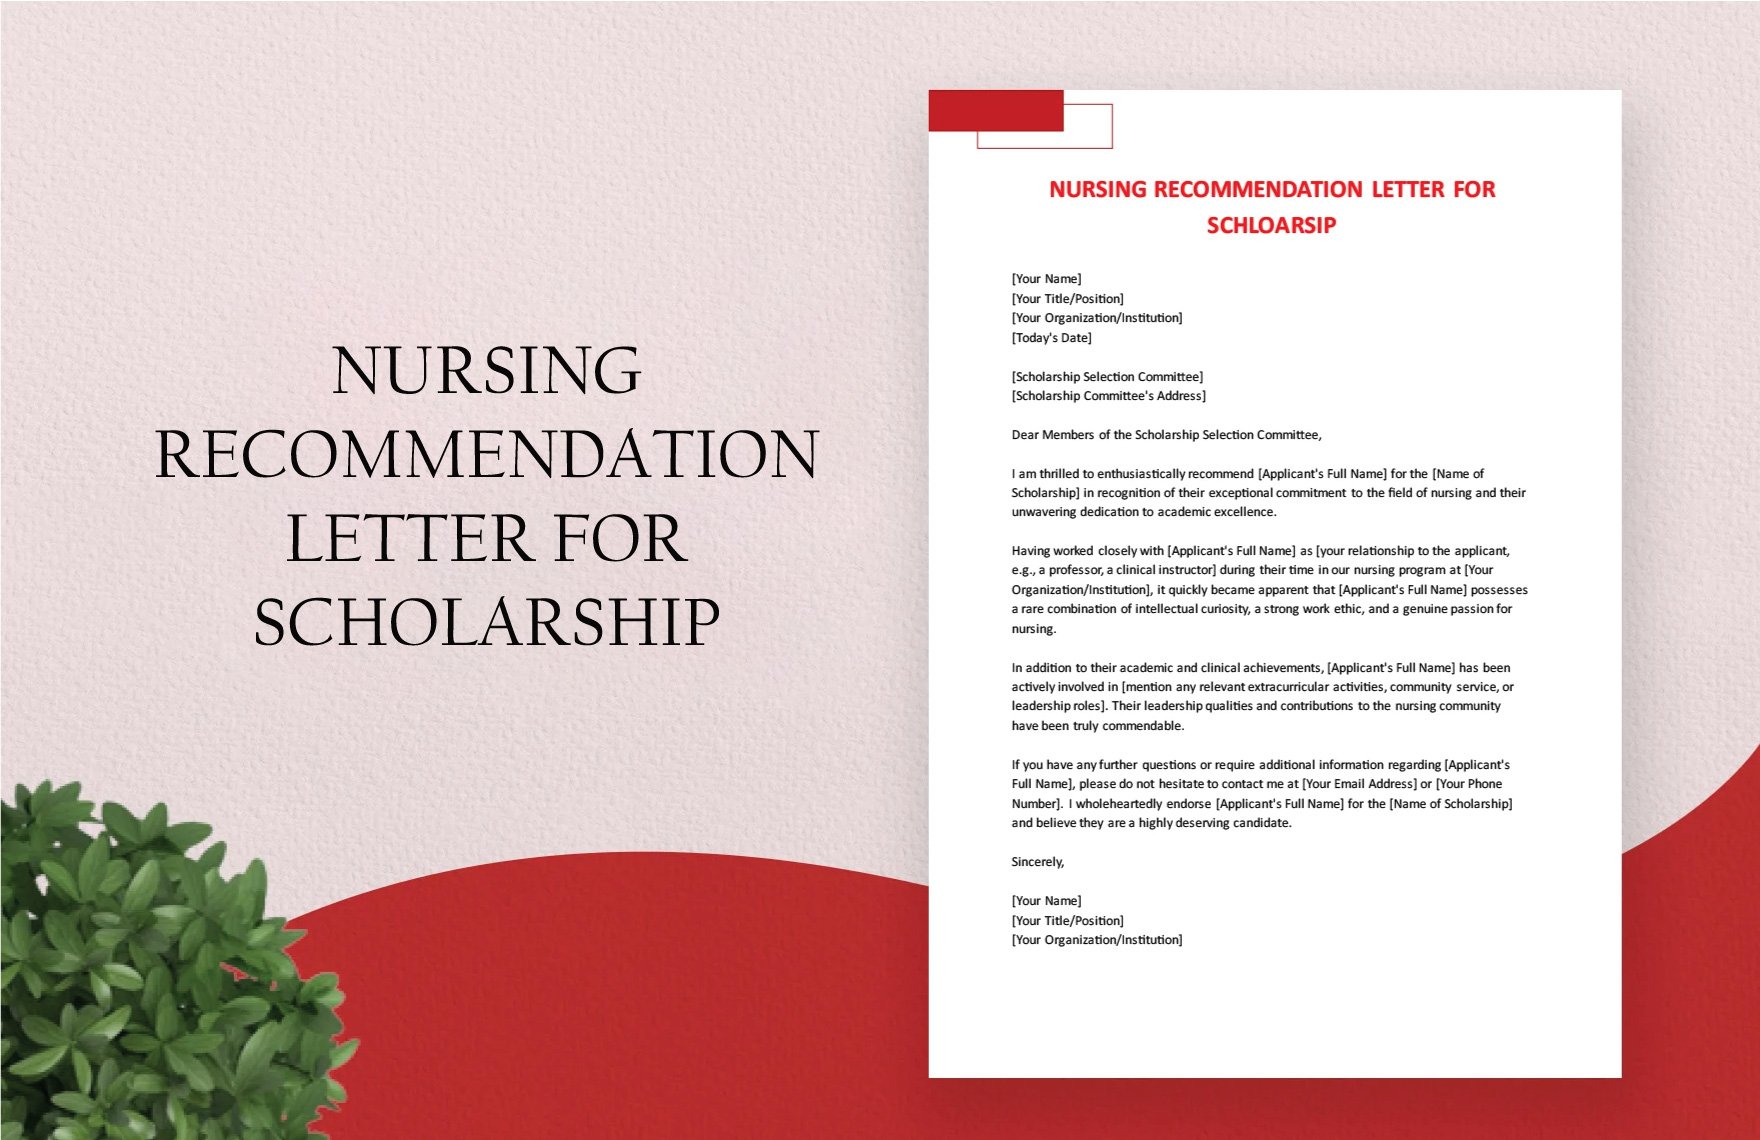 Nursing Recommendation Letter For Scholarship